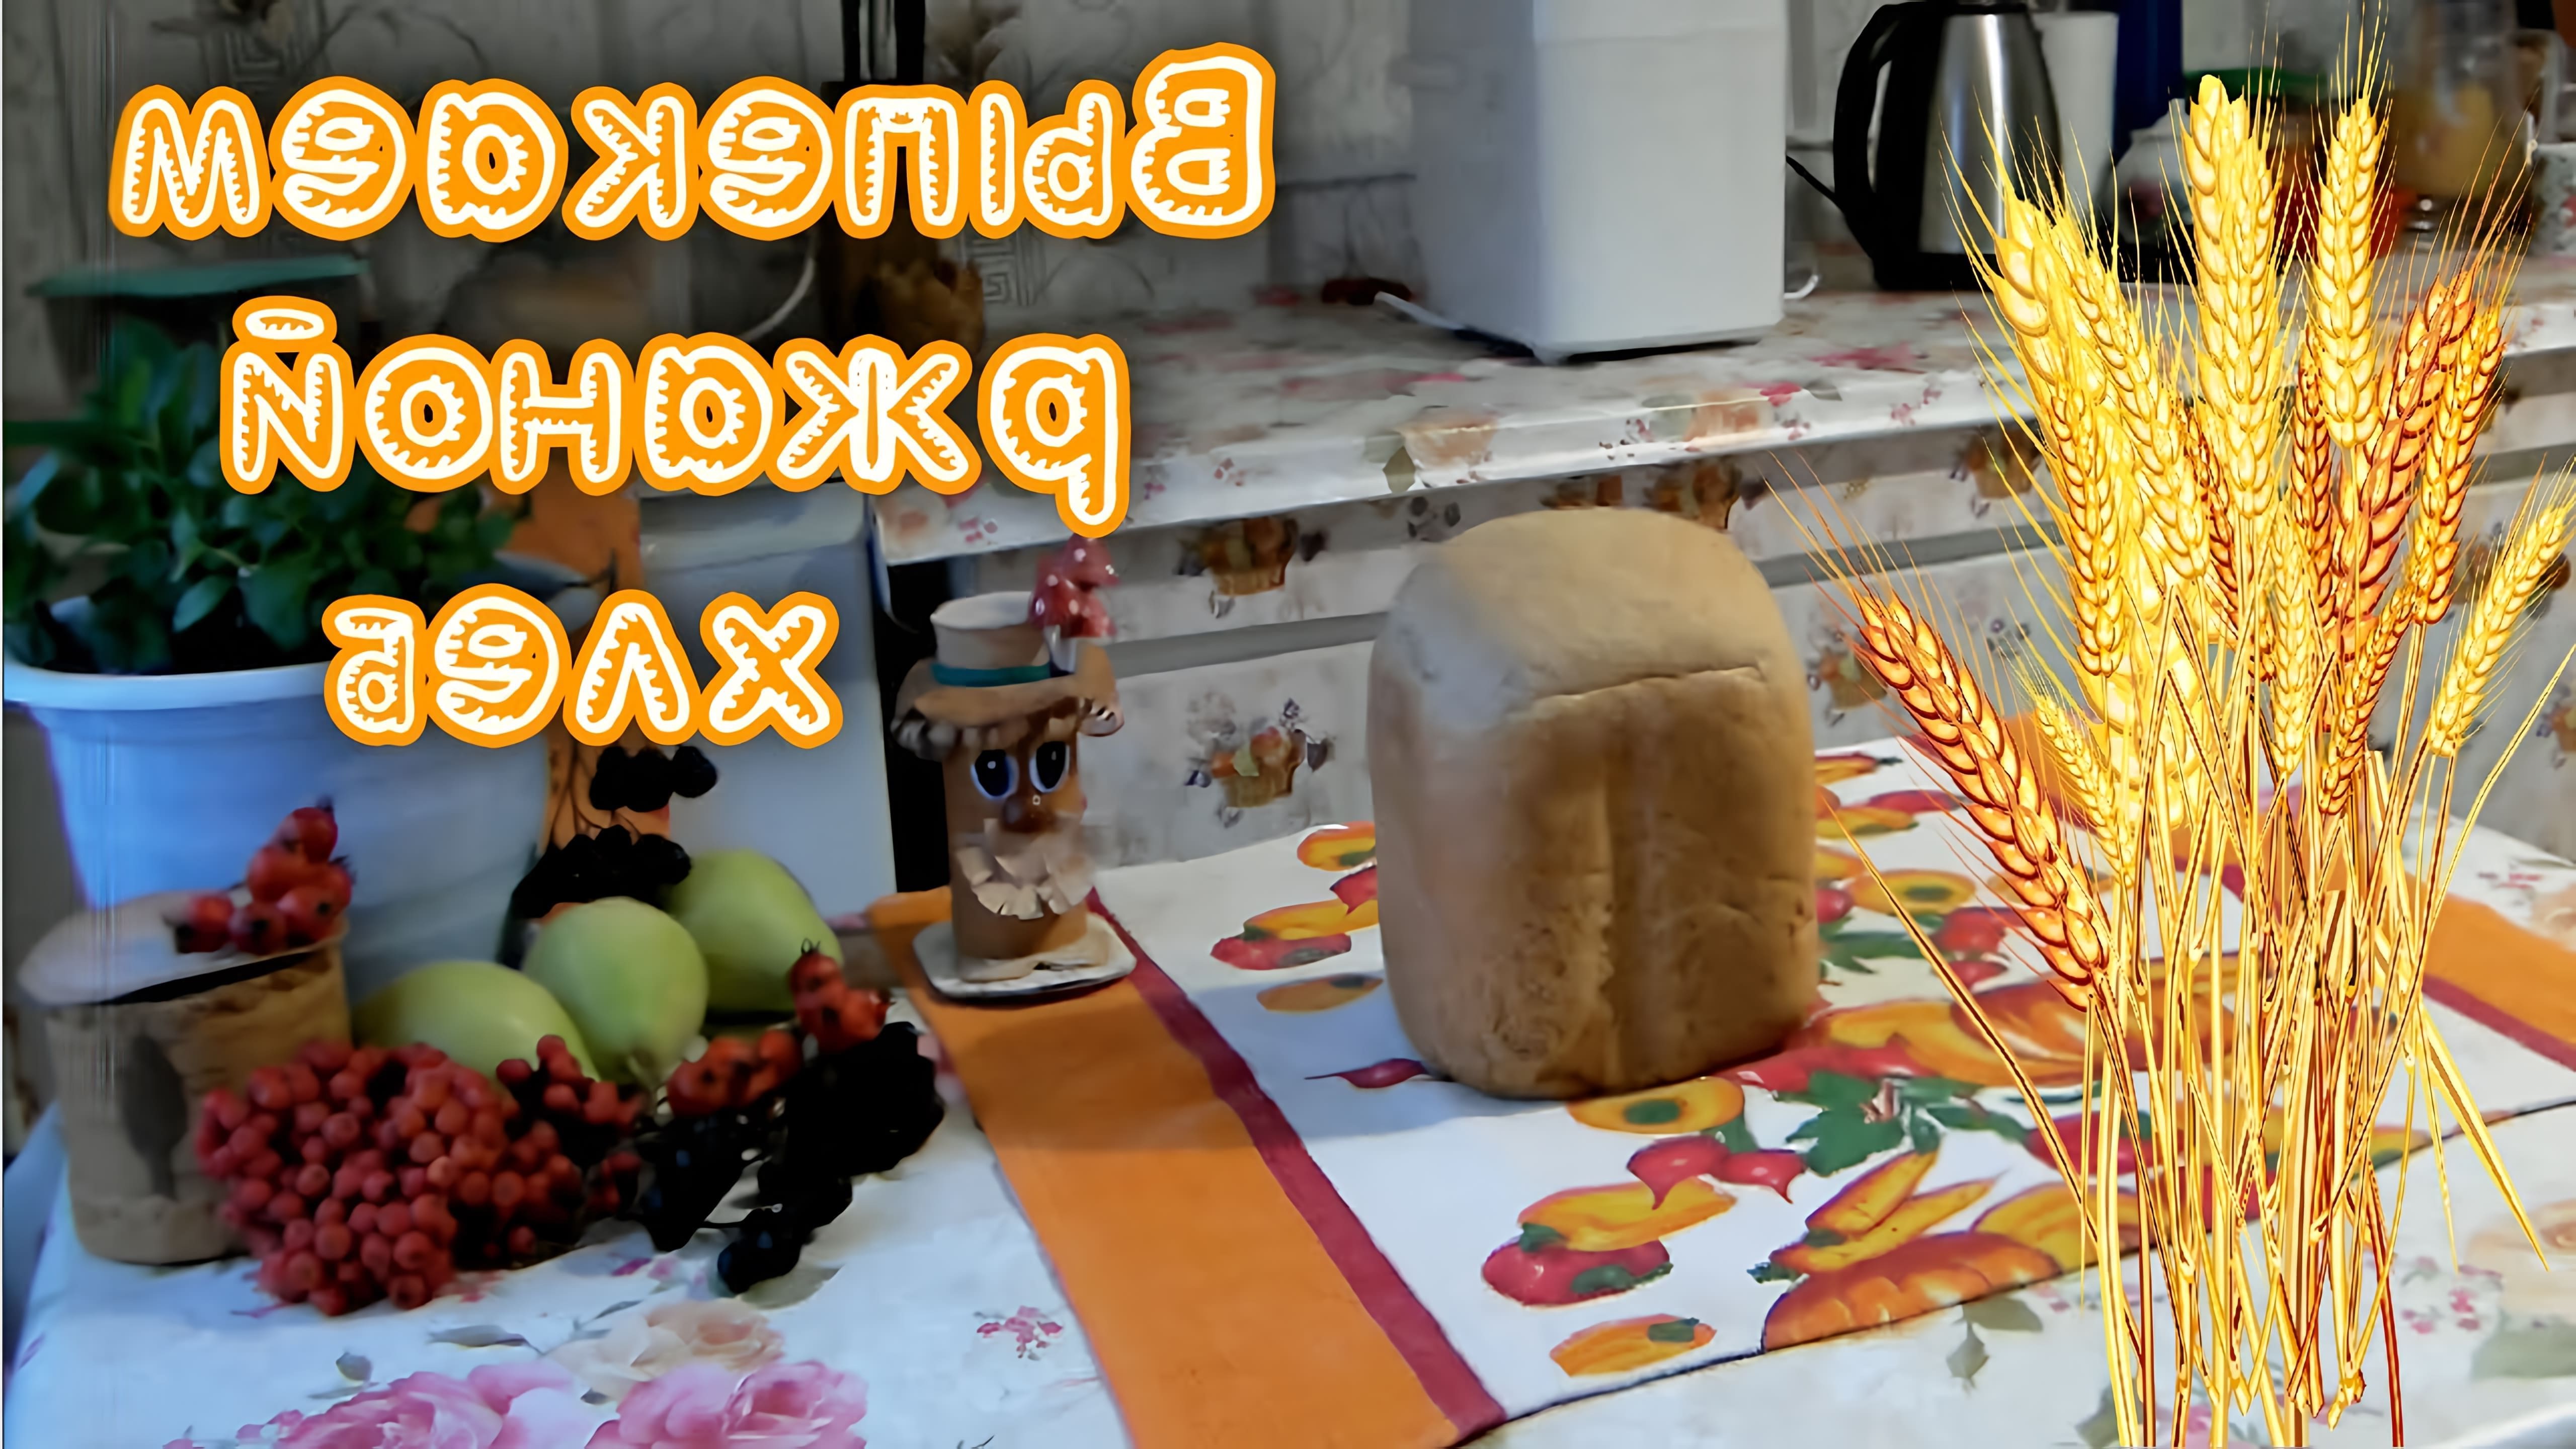 В этом видео Николай Лесков показывает, как приготовить ржаной хлеб в хлебопечке